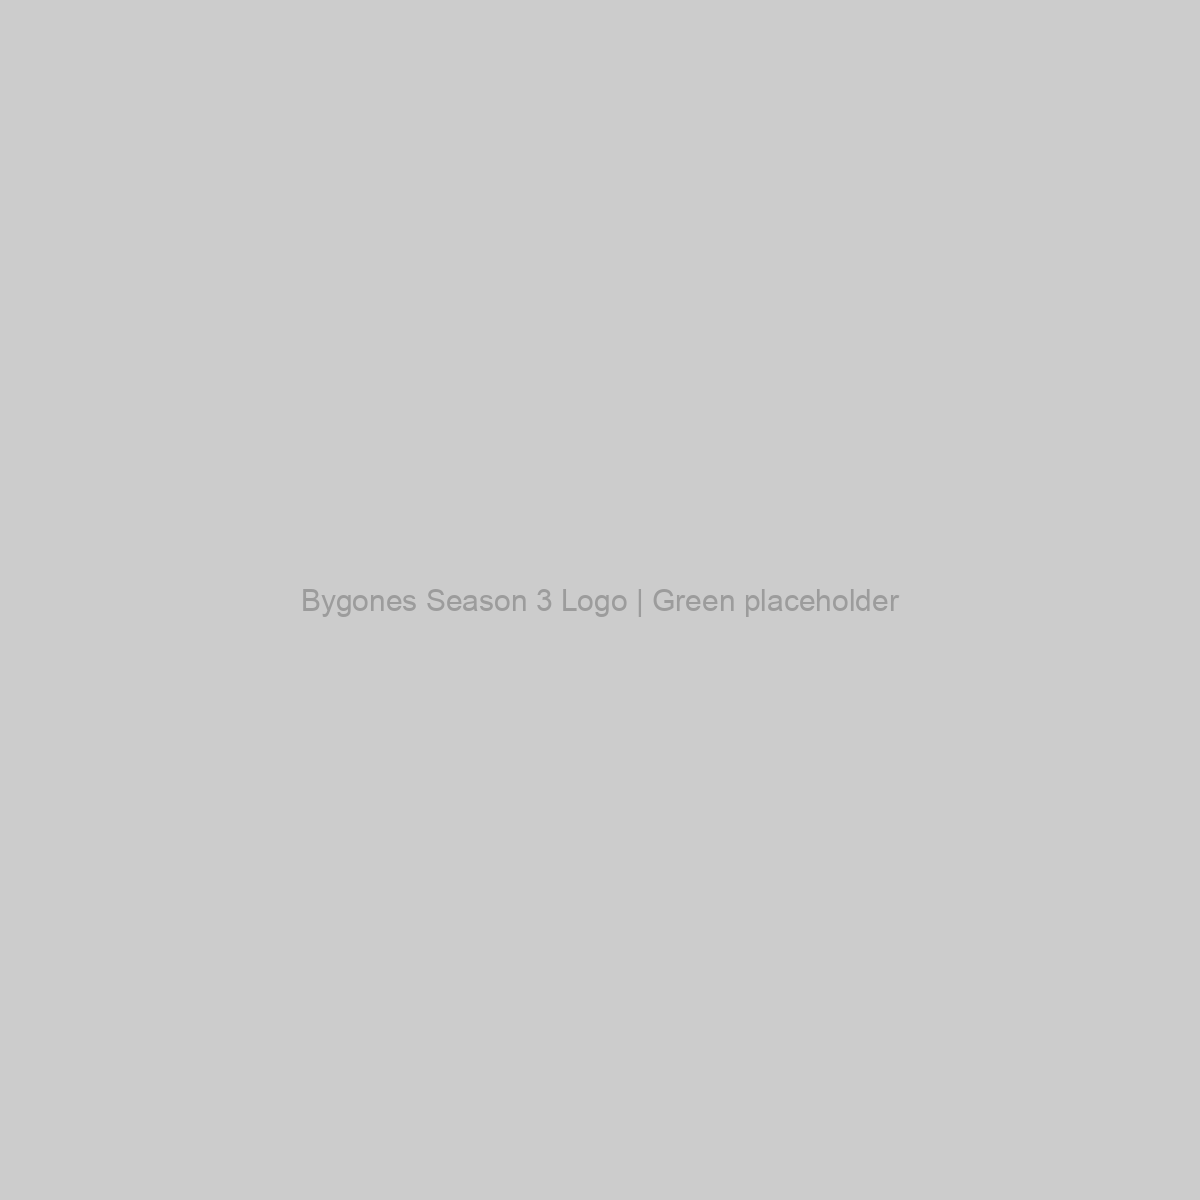 Bygones Season 3 Logo | Green Placeholder Image